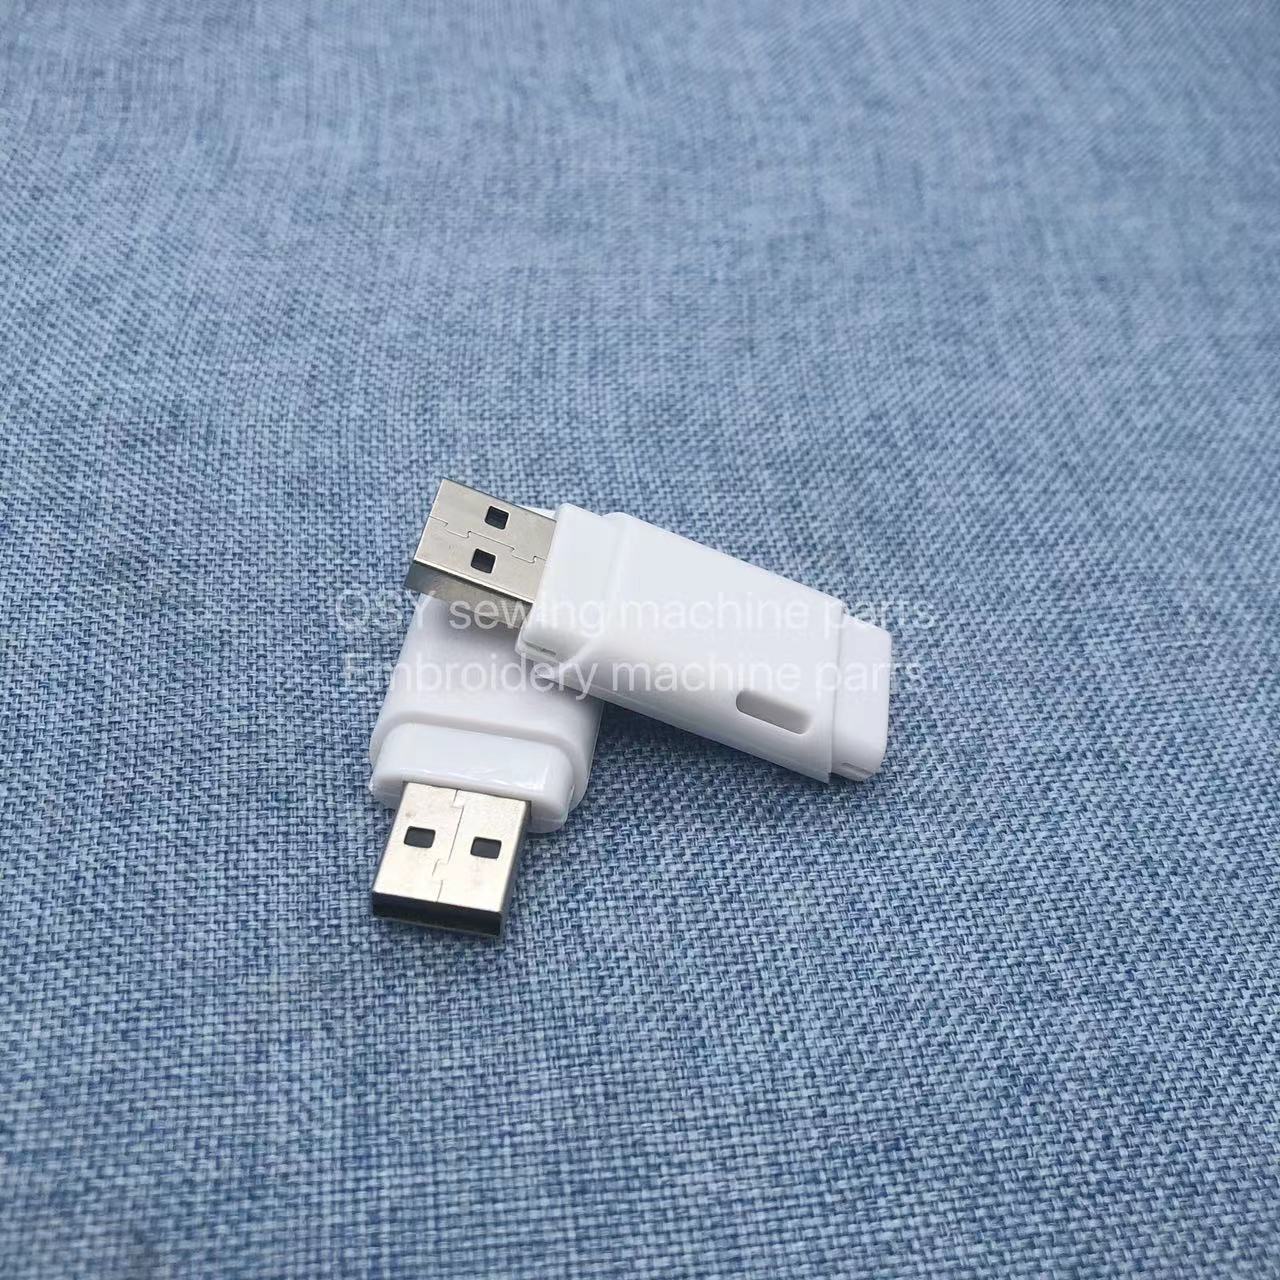 电脑绣花机配件 大豪U盘USB 2GB 4GB 绣花机花样存储器